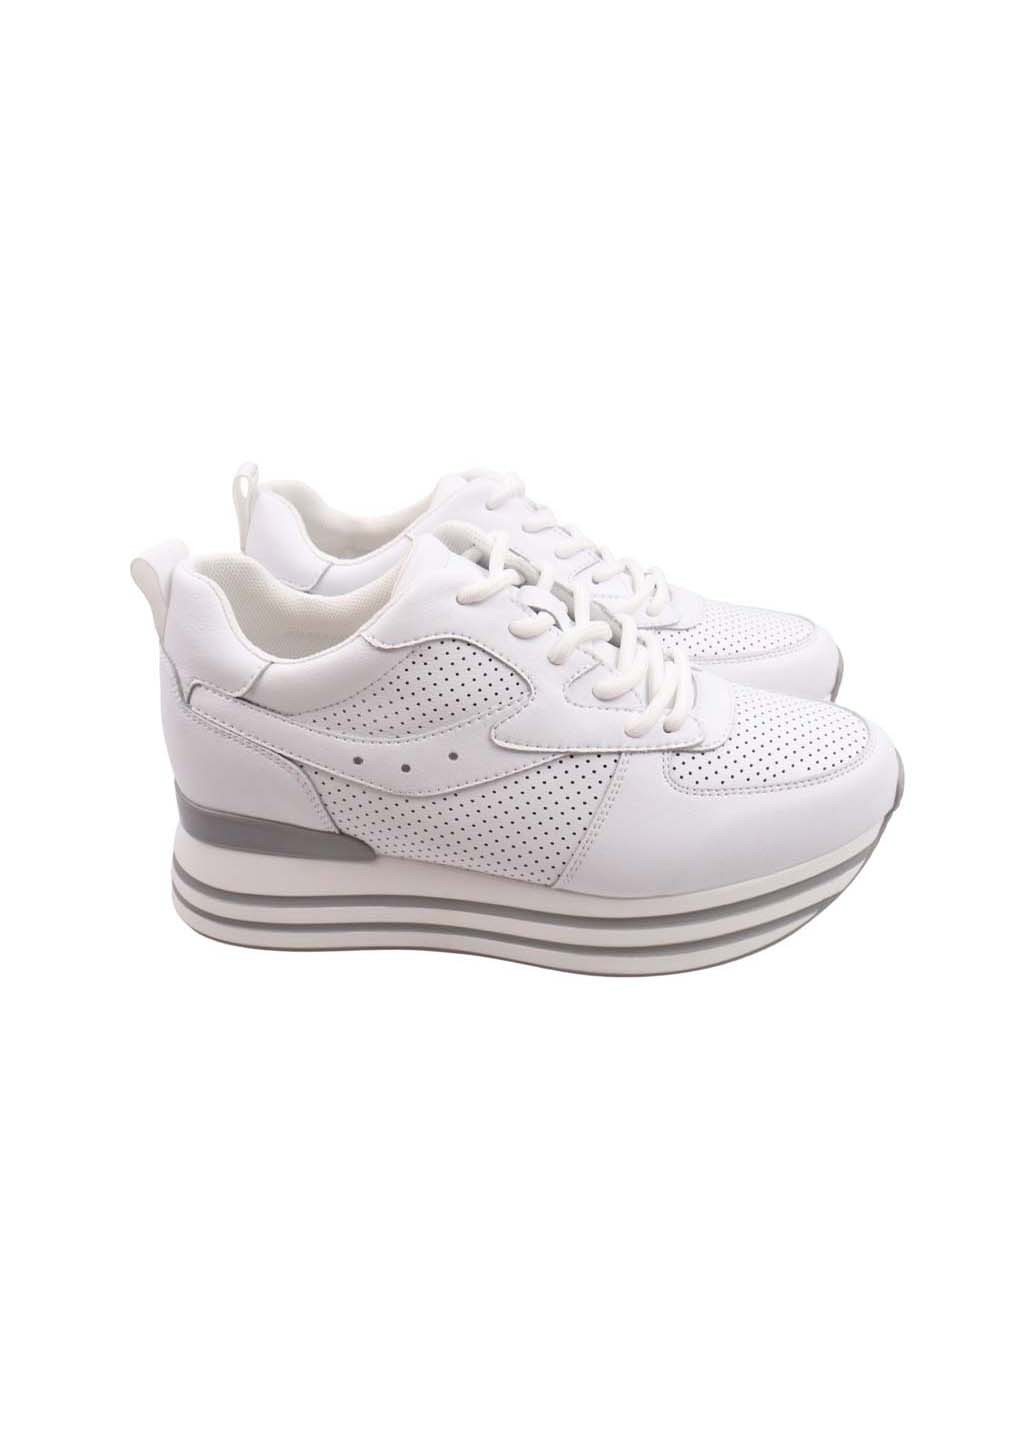 Білі осінні кросівки FARINNI 426-23DK